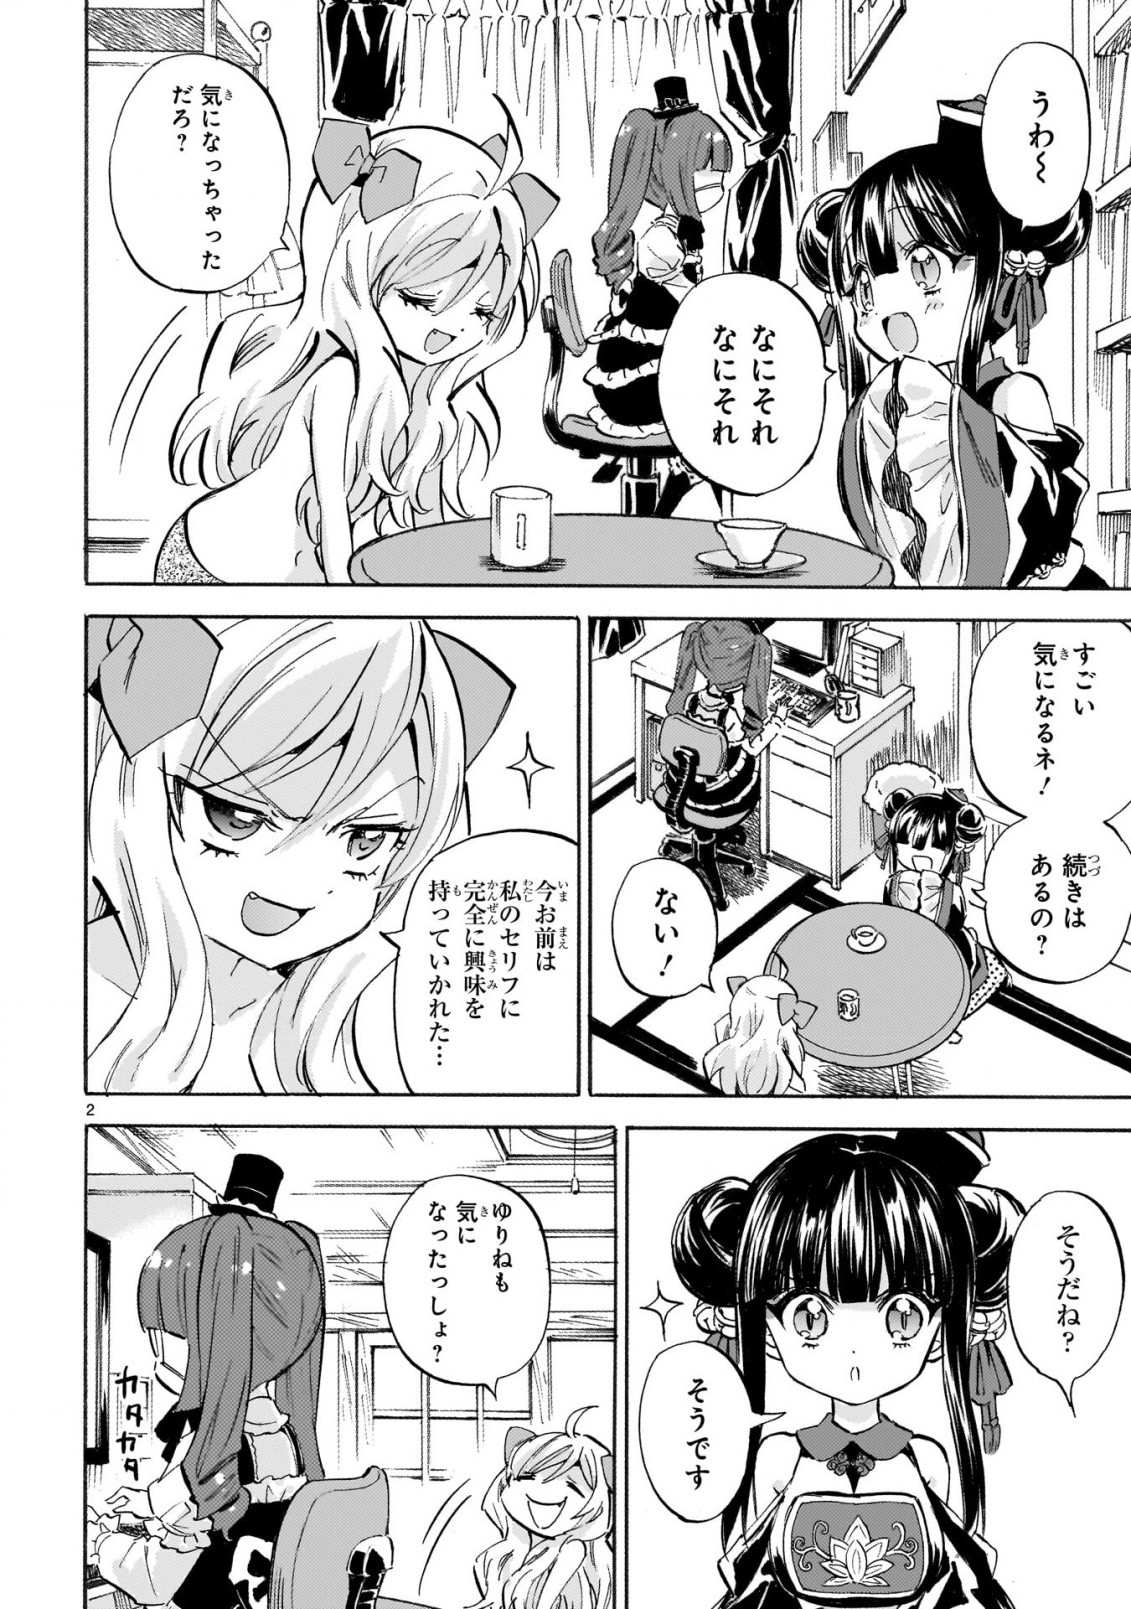 Jashin-chan Dropkick - Chapter 231 - Page 2